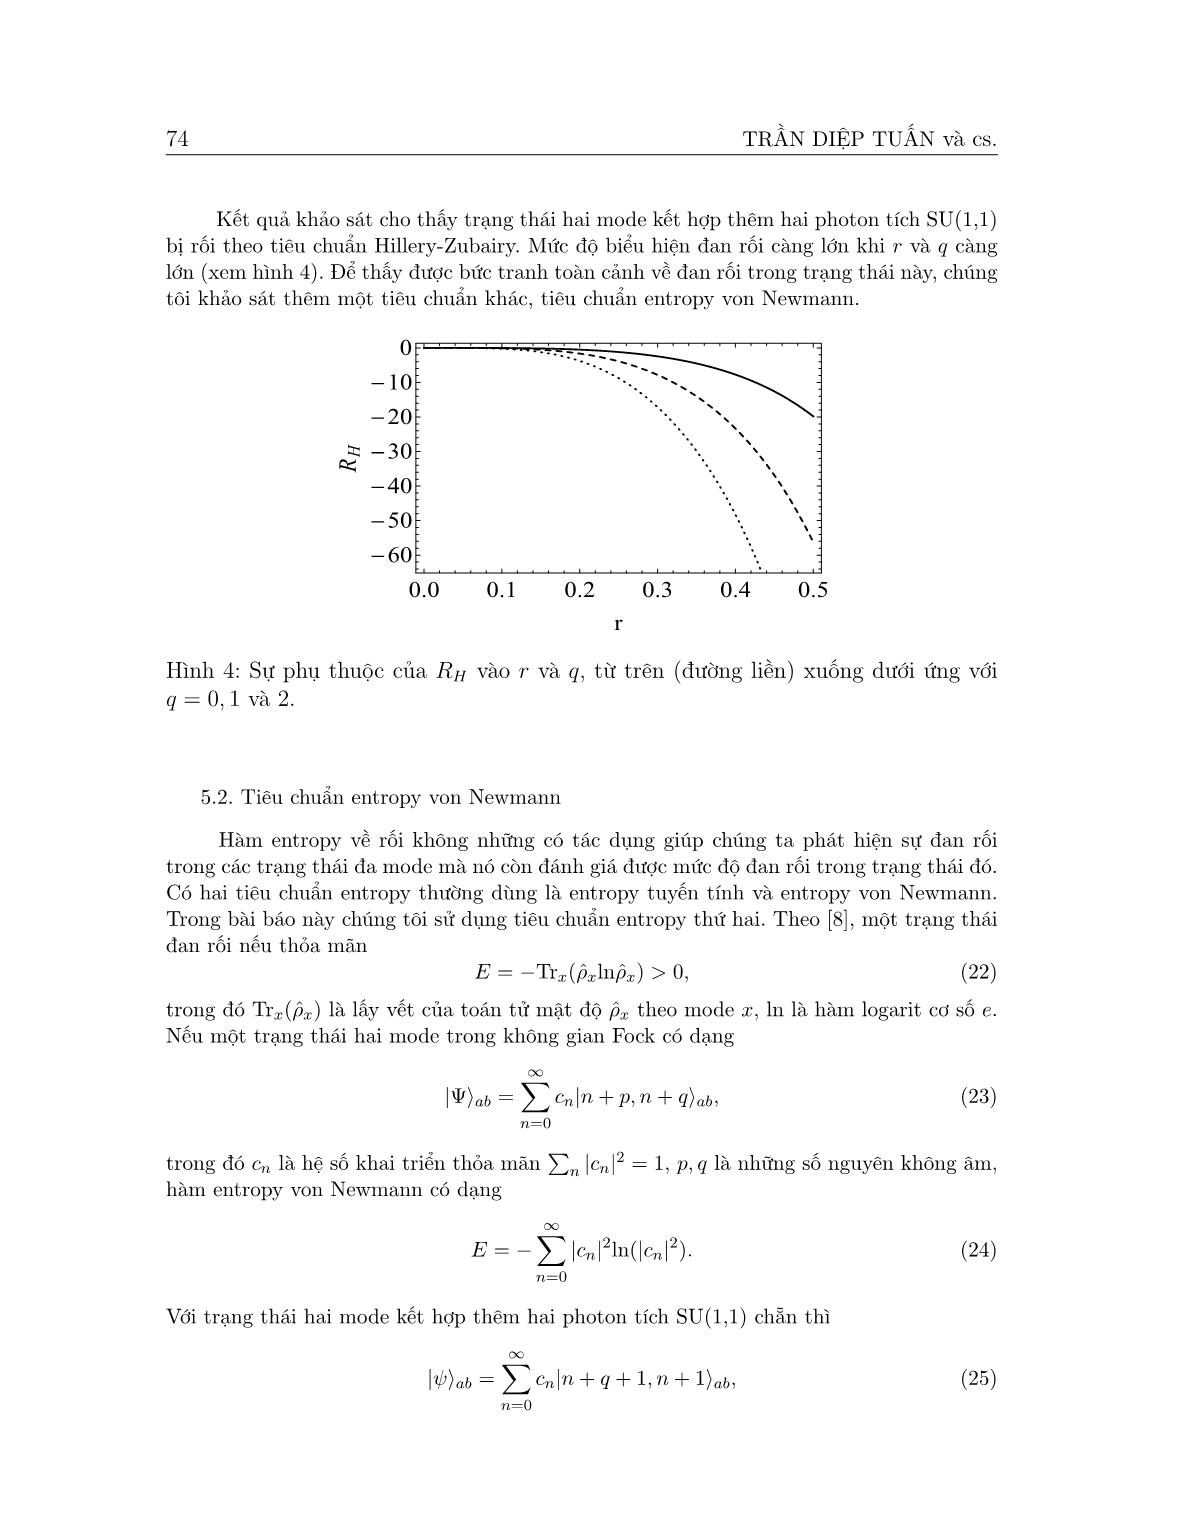 Các tính chất phi cổ điển của trạng thái hai mode kết hợp thêm hai photon tích su(1,1) chẵn trang 7